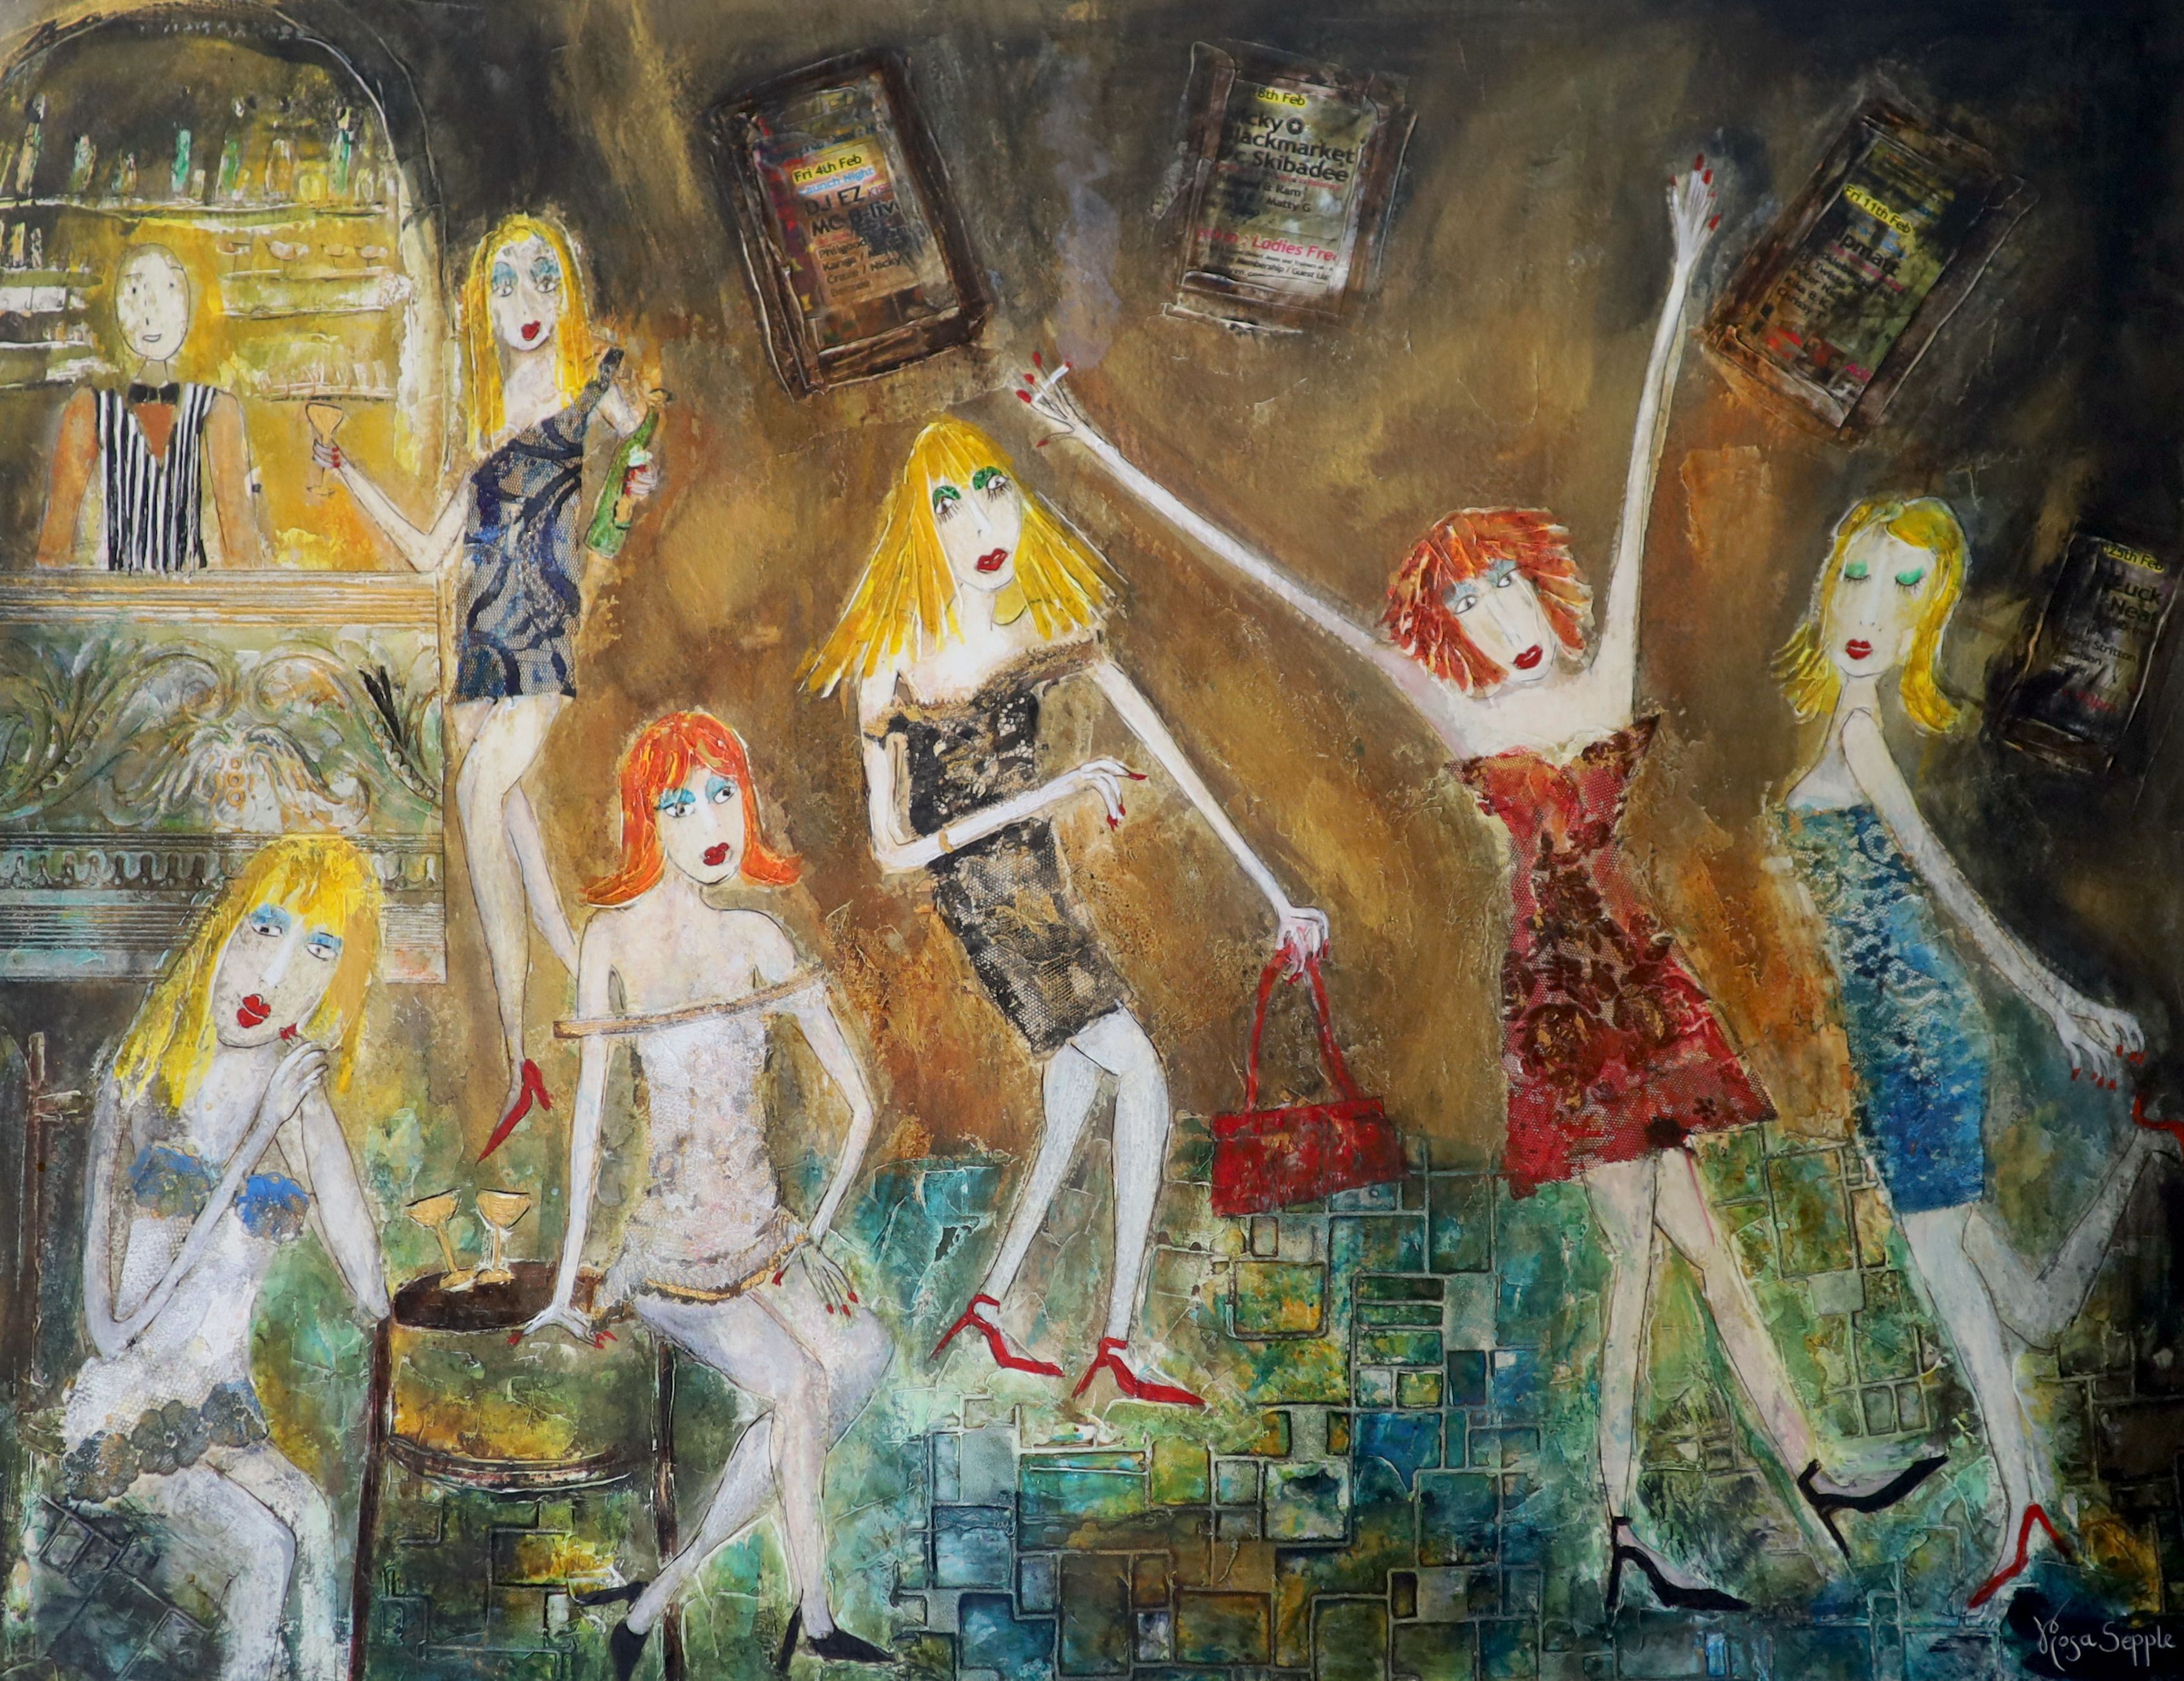 Rosa Sepple RI, (Contemporary British), 'Ladies Go Free', mixed media, 55 x 74cm